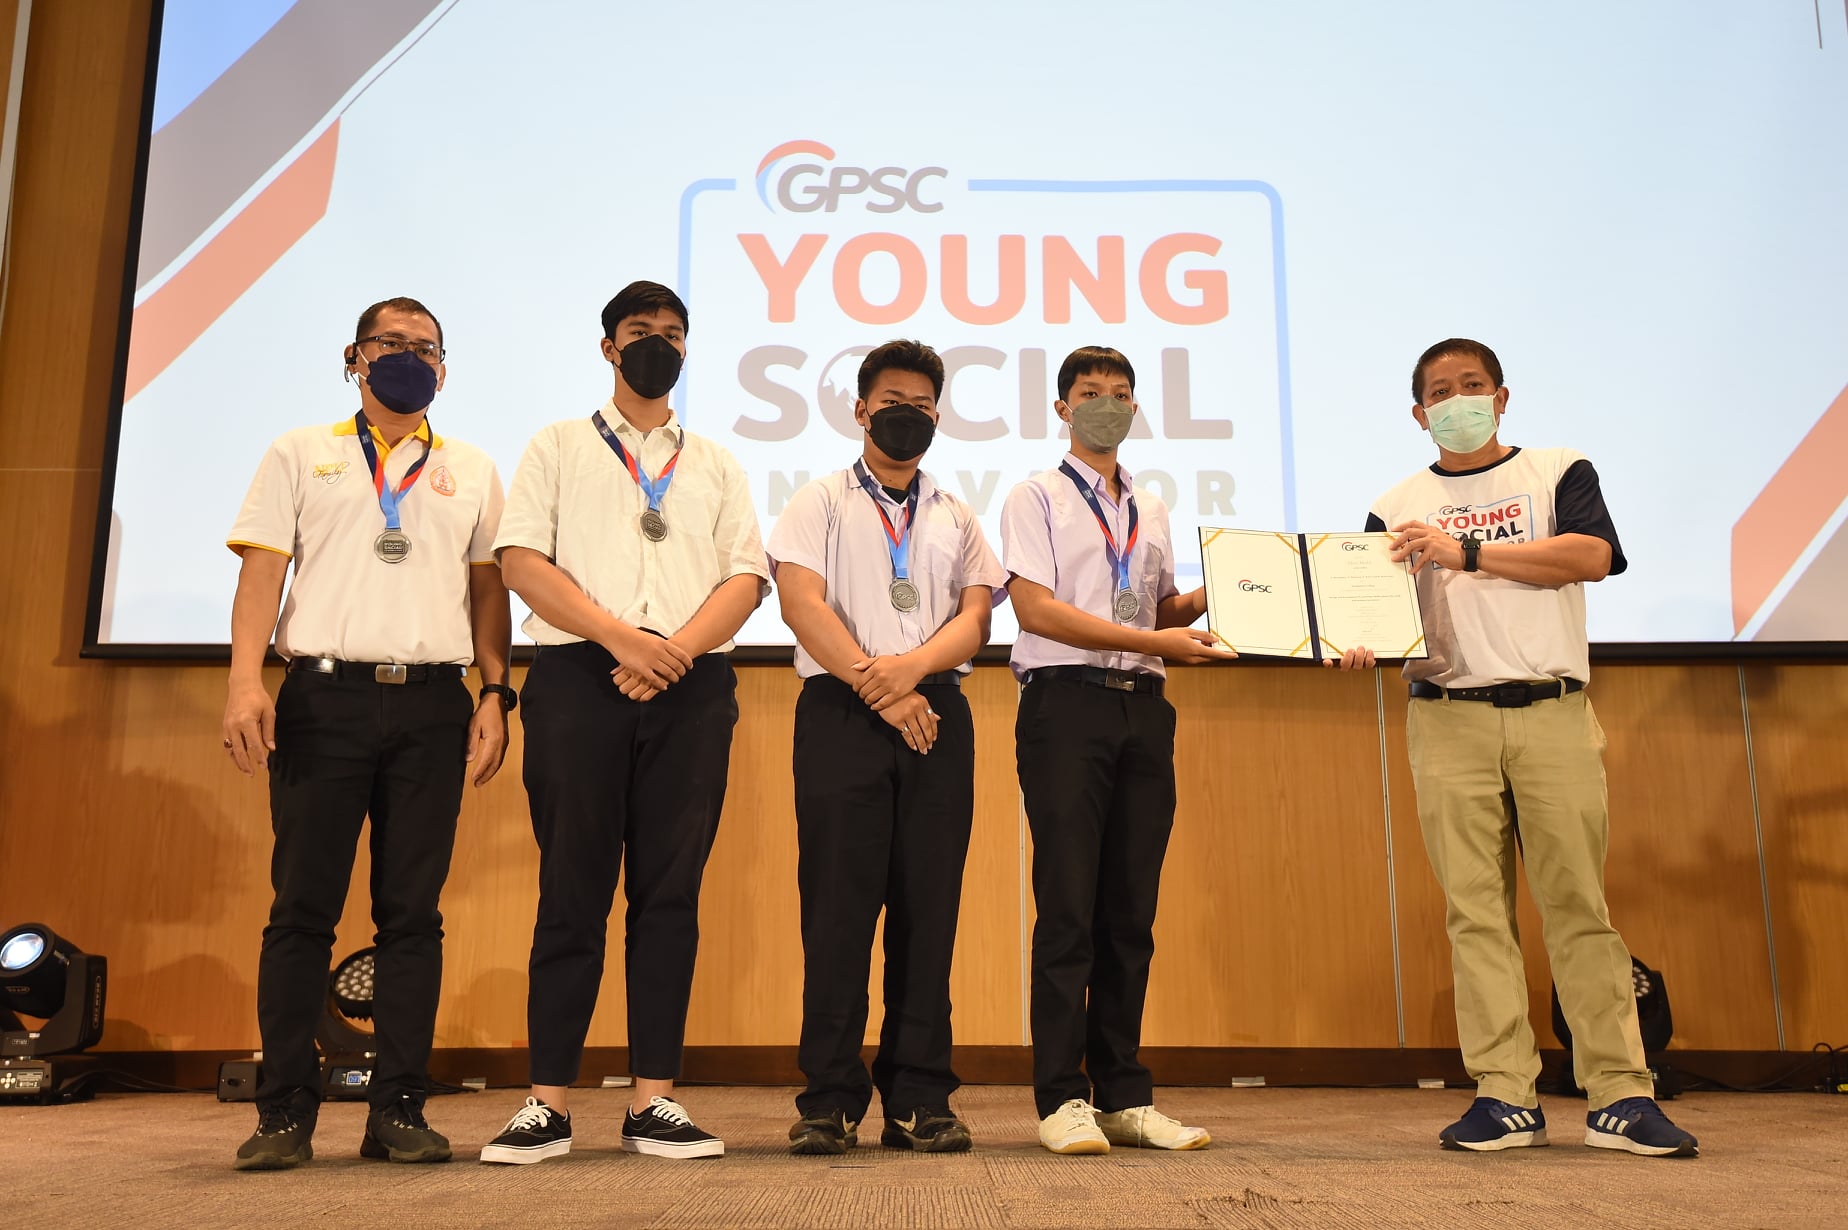 นศ.วิทยาลัยธาตุพนม มหาวิทยาลัยนครพนม รับรางวัลเหรียญเงินประเภทสิ่งประดิษฐ์ จากการแข่งขัน GPSC Young Social Innovation